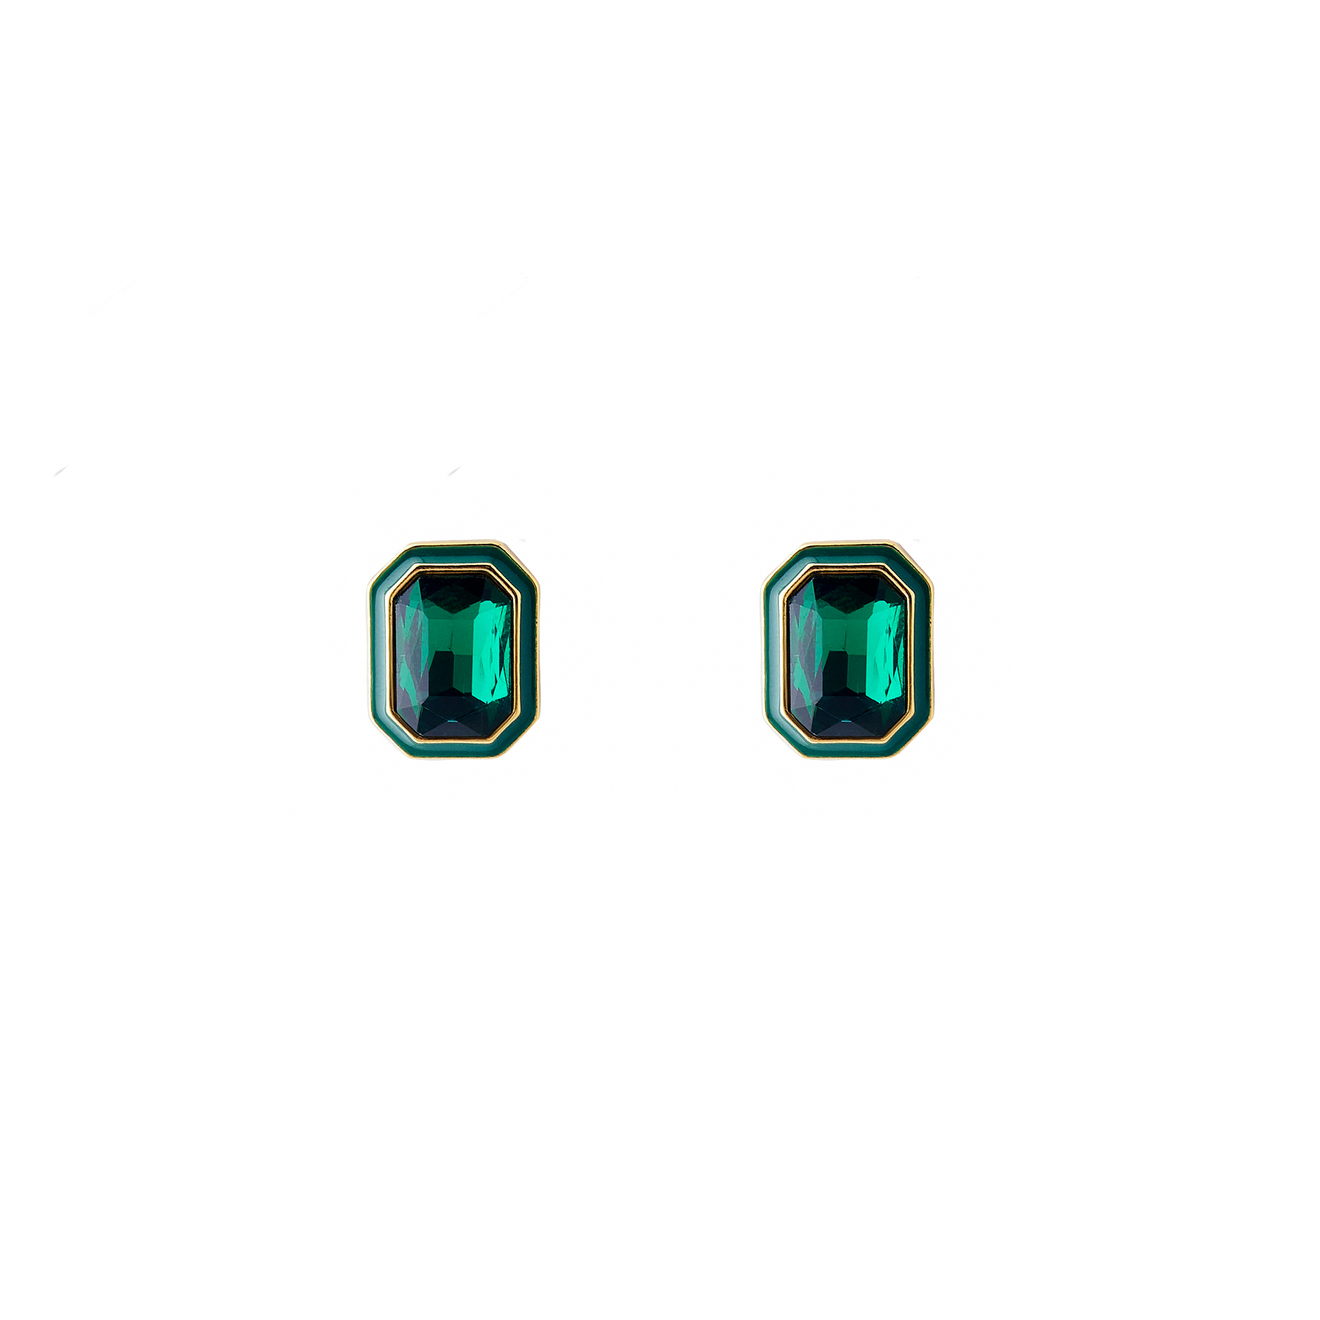 Herald Percy Крупные золотистые серьги с зелеными кристаллами и зеленой эмалью aqua золотистые серьги с подвесами с зеленой эмалью